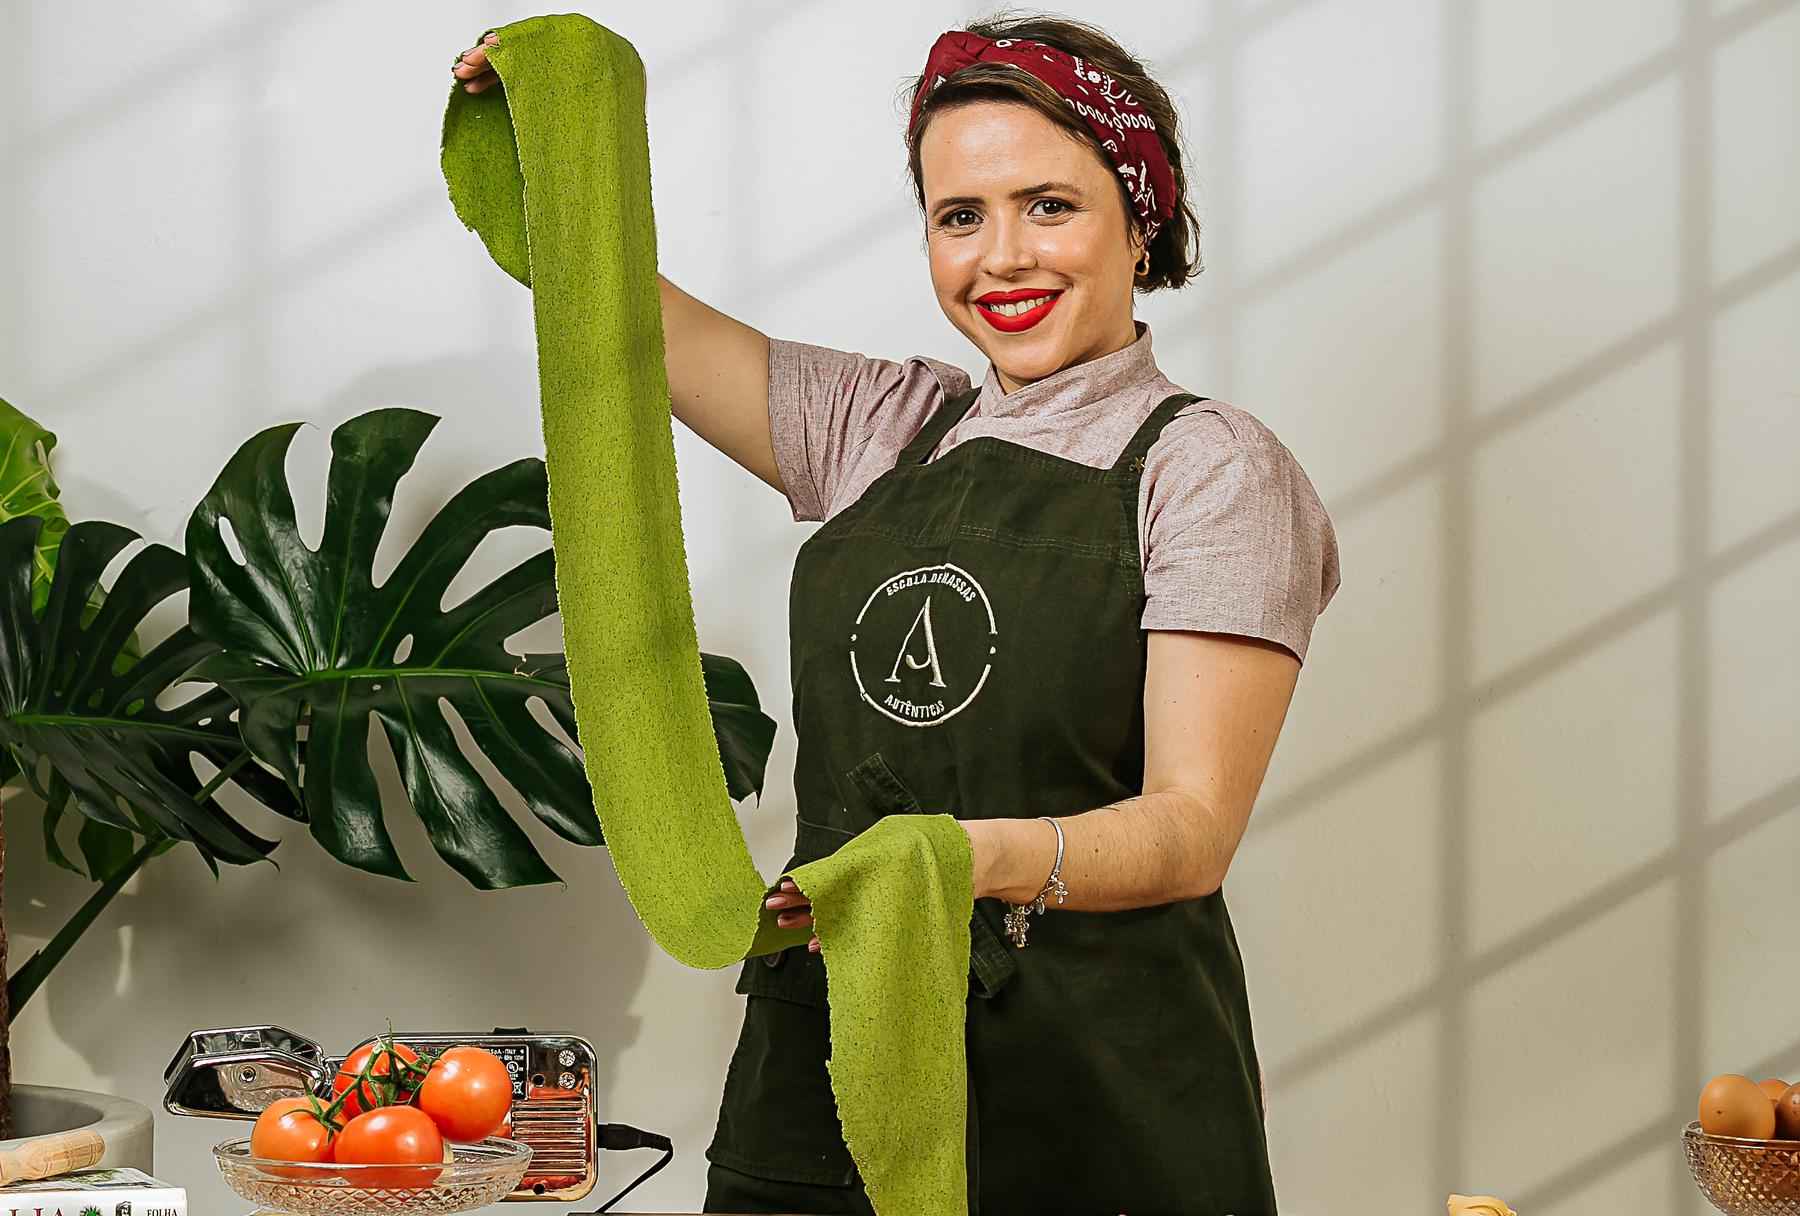 Tingimento natural: vegetais são usados para colorir a comida - Nina Fernandes/Divulgação